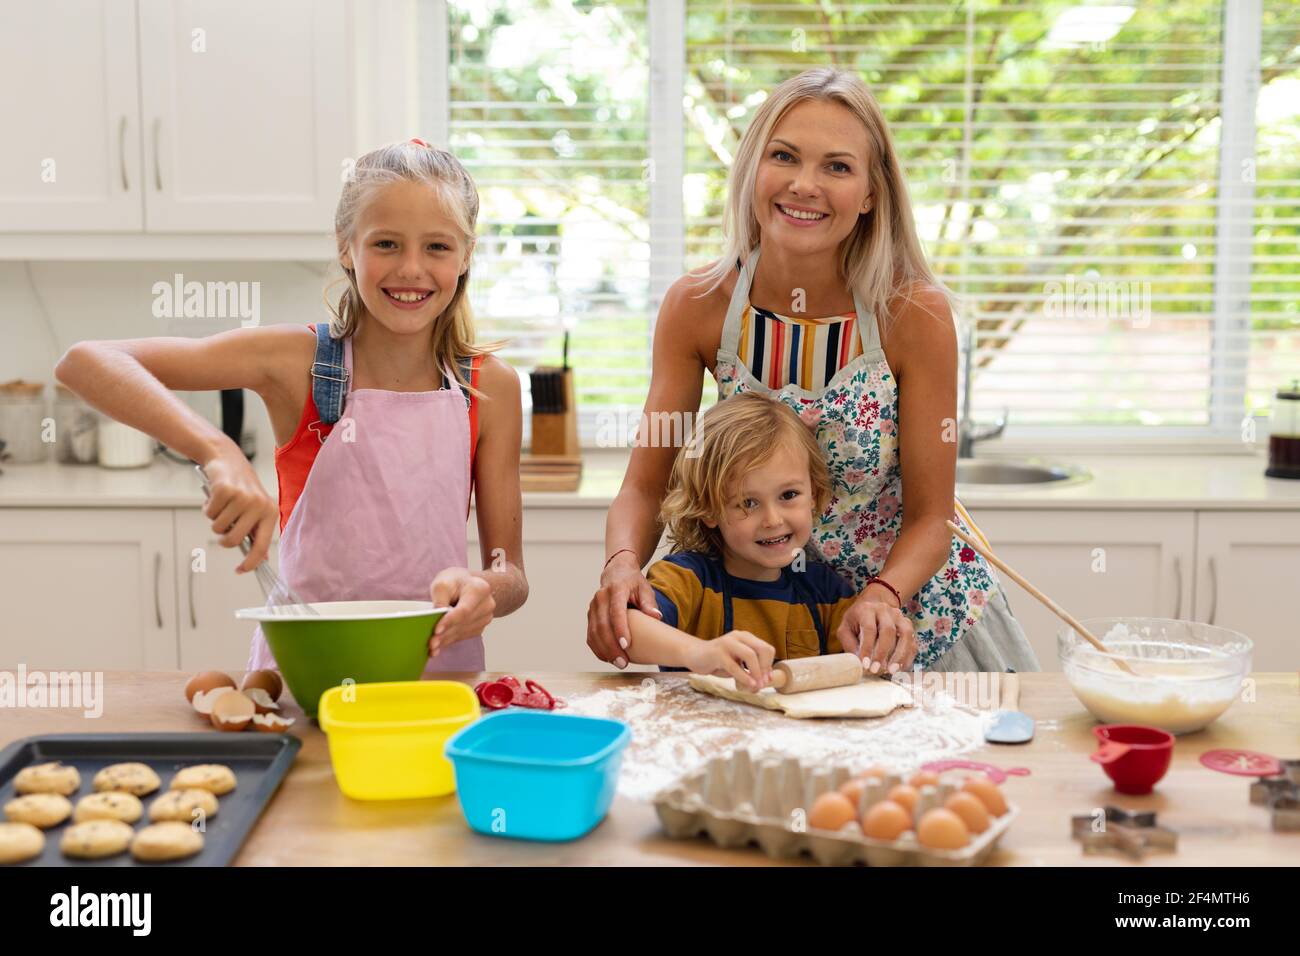 Lächelnde kaukasische Mutter, Tochter und Sohn tragen Schürzen und backen gemeinsam in der Küche Kekse Stockfoto